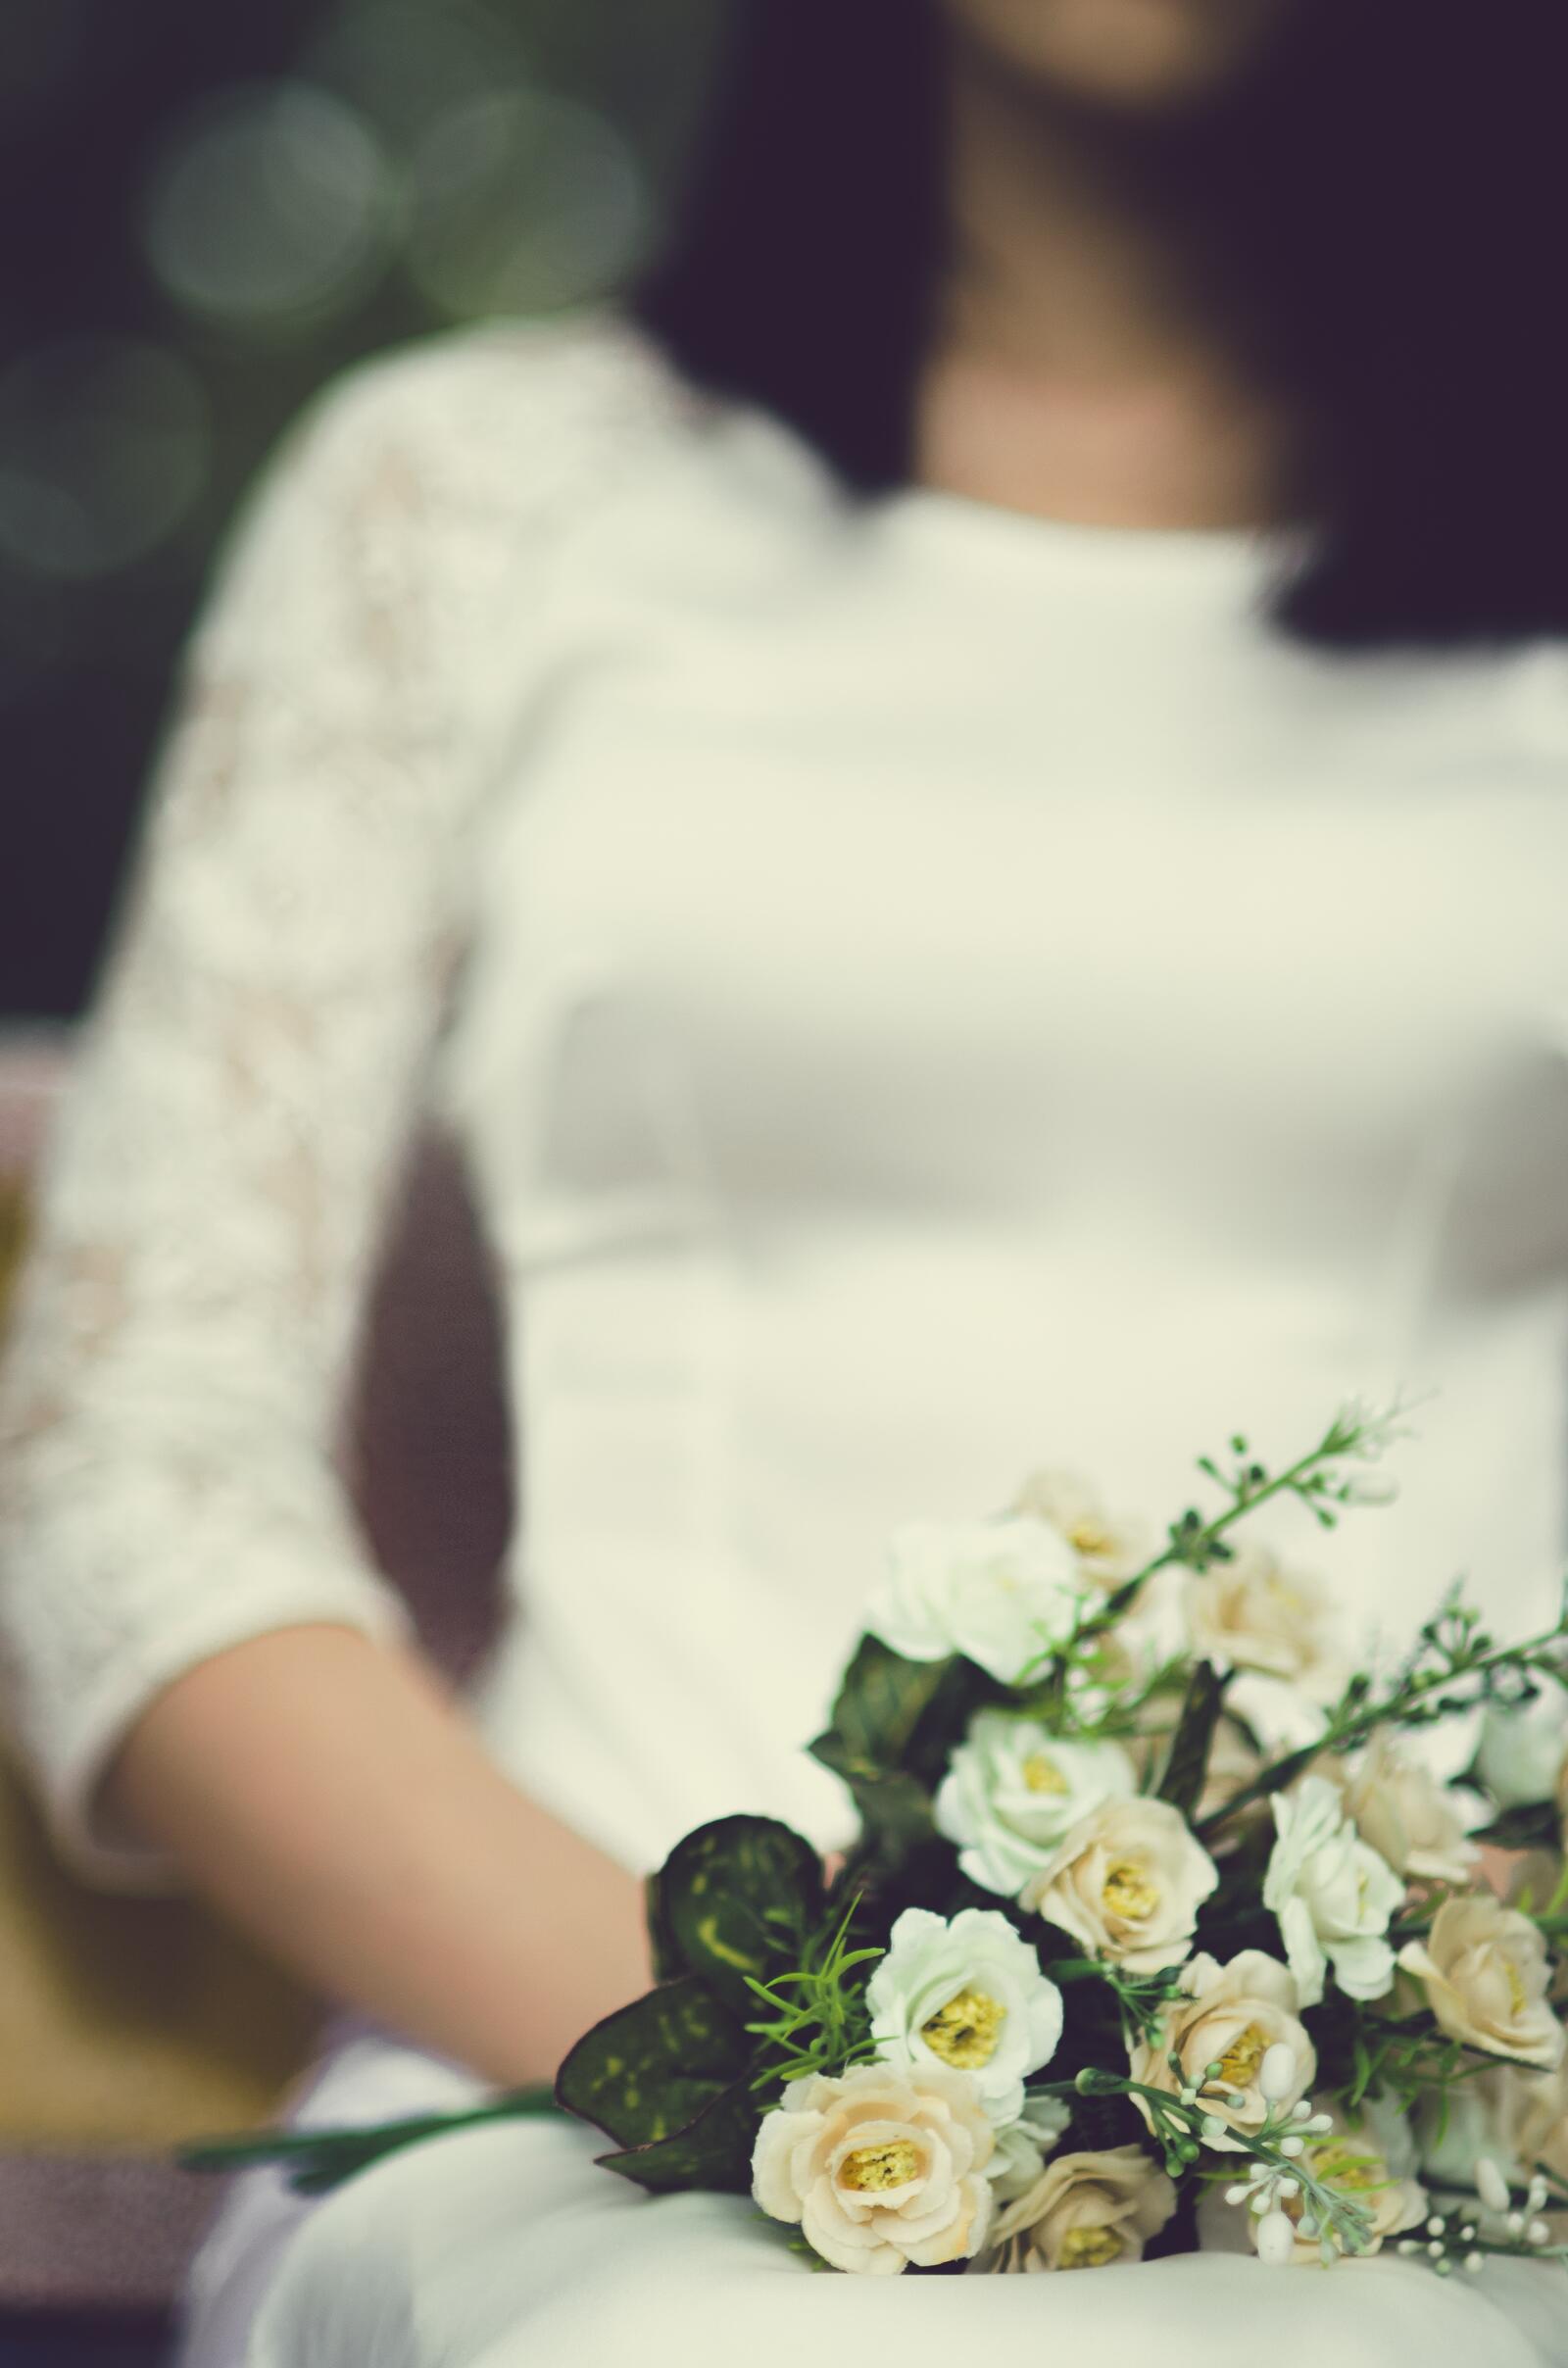 Бесплатное фото Девушка в свадебном платье с букетом цветов